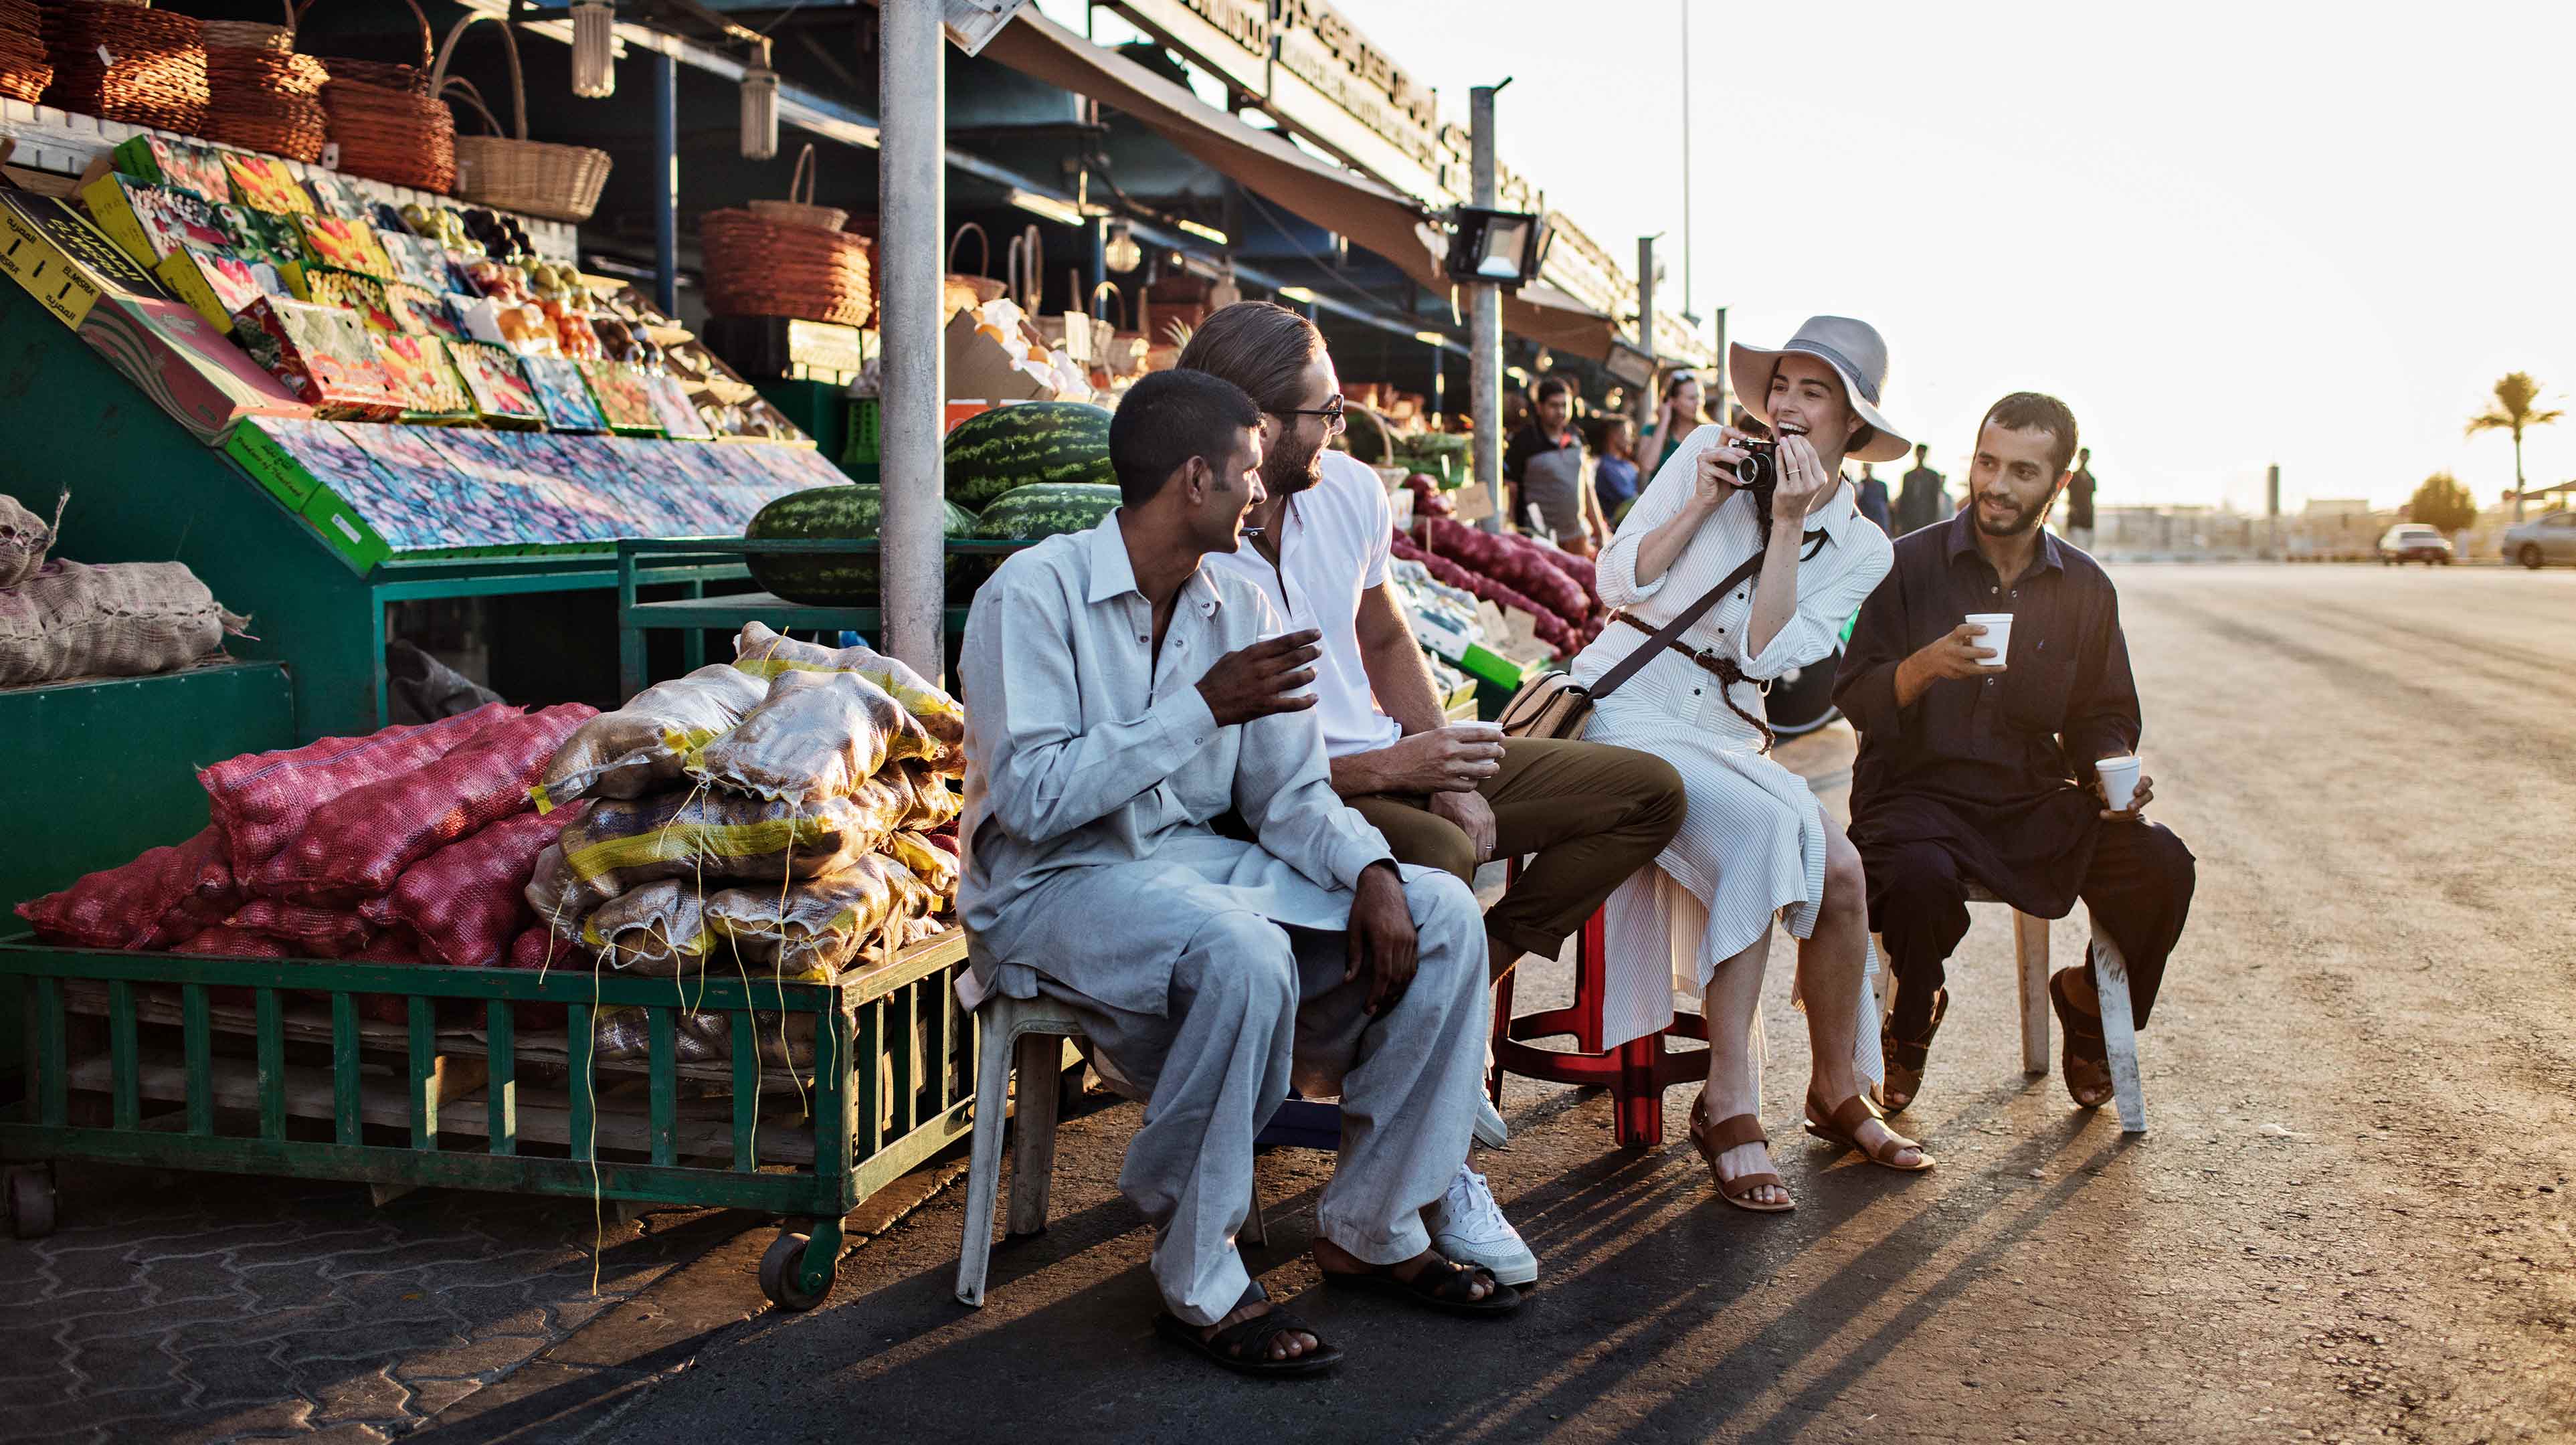 سياح يلتقطون الصور مع بائع في كشك فواكه وخضرة بسوق الميناء